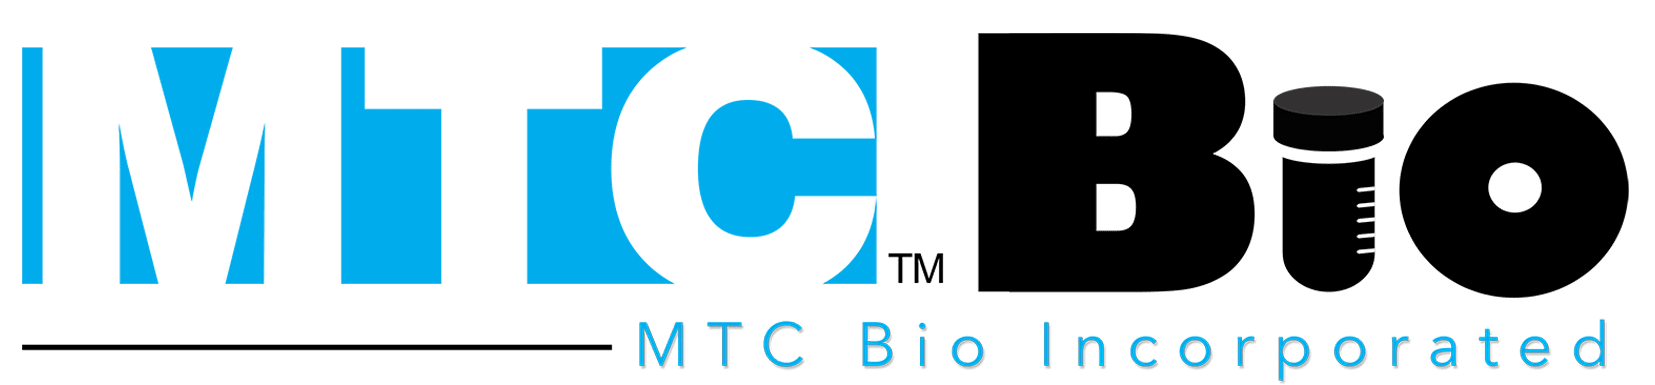 MTC-Bio-Logo-2019-5